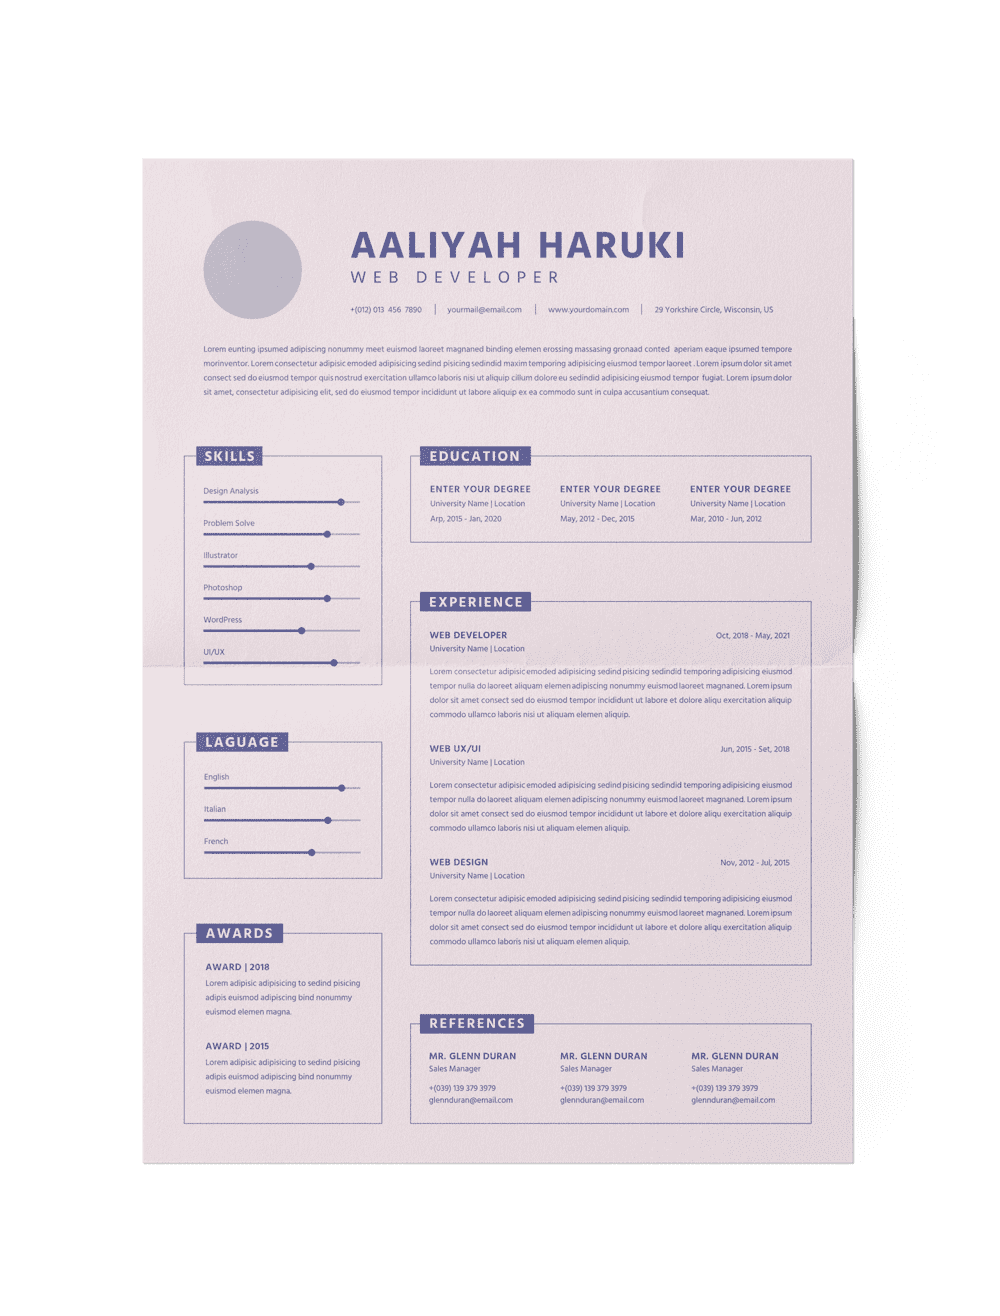 CV #2 Aaliyah Haruki